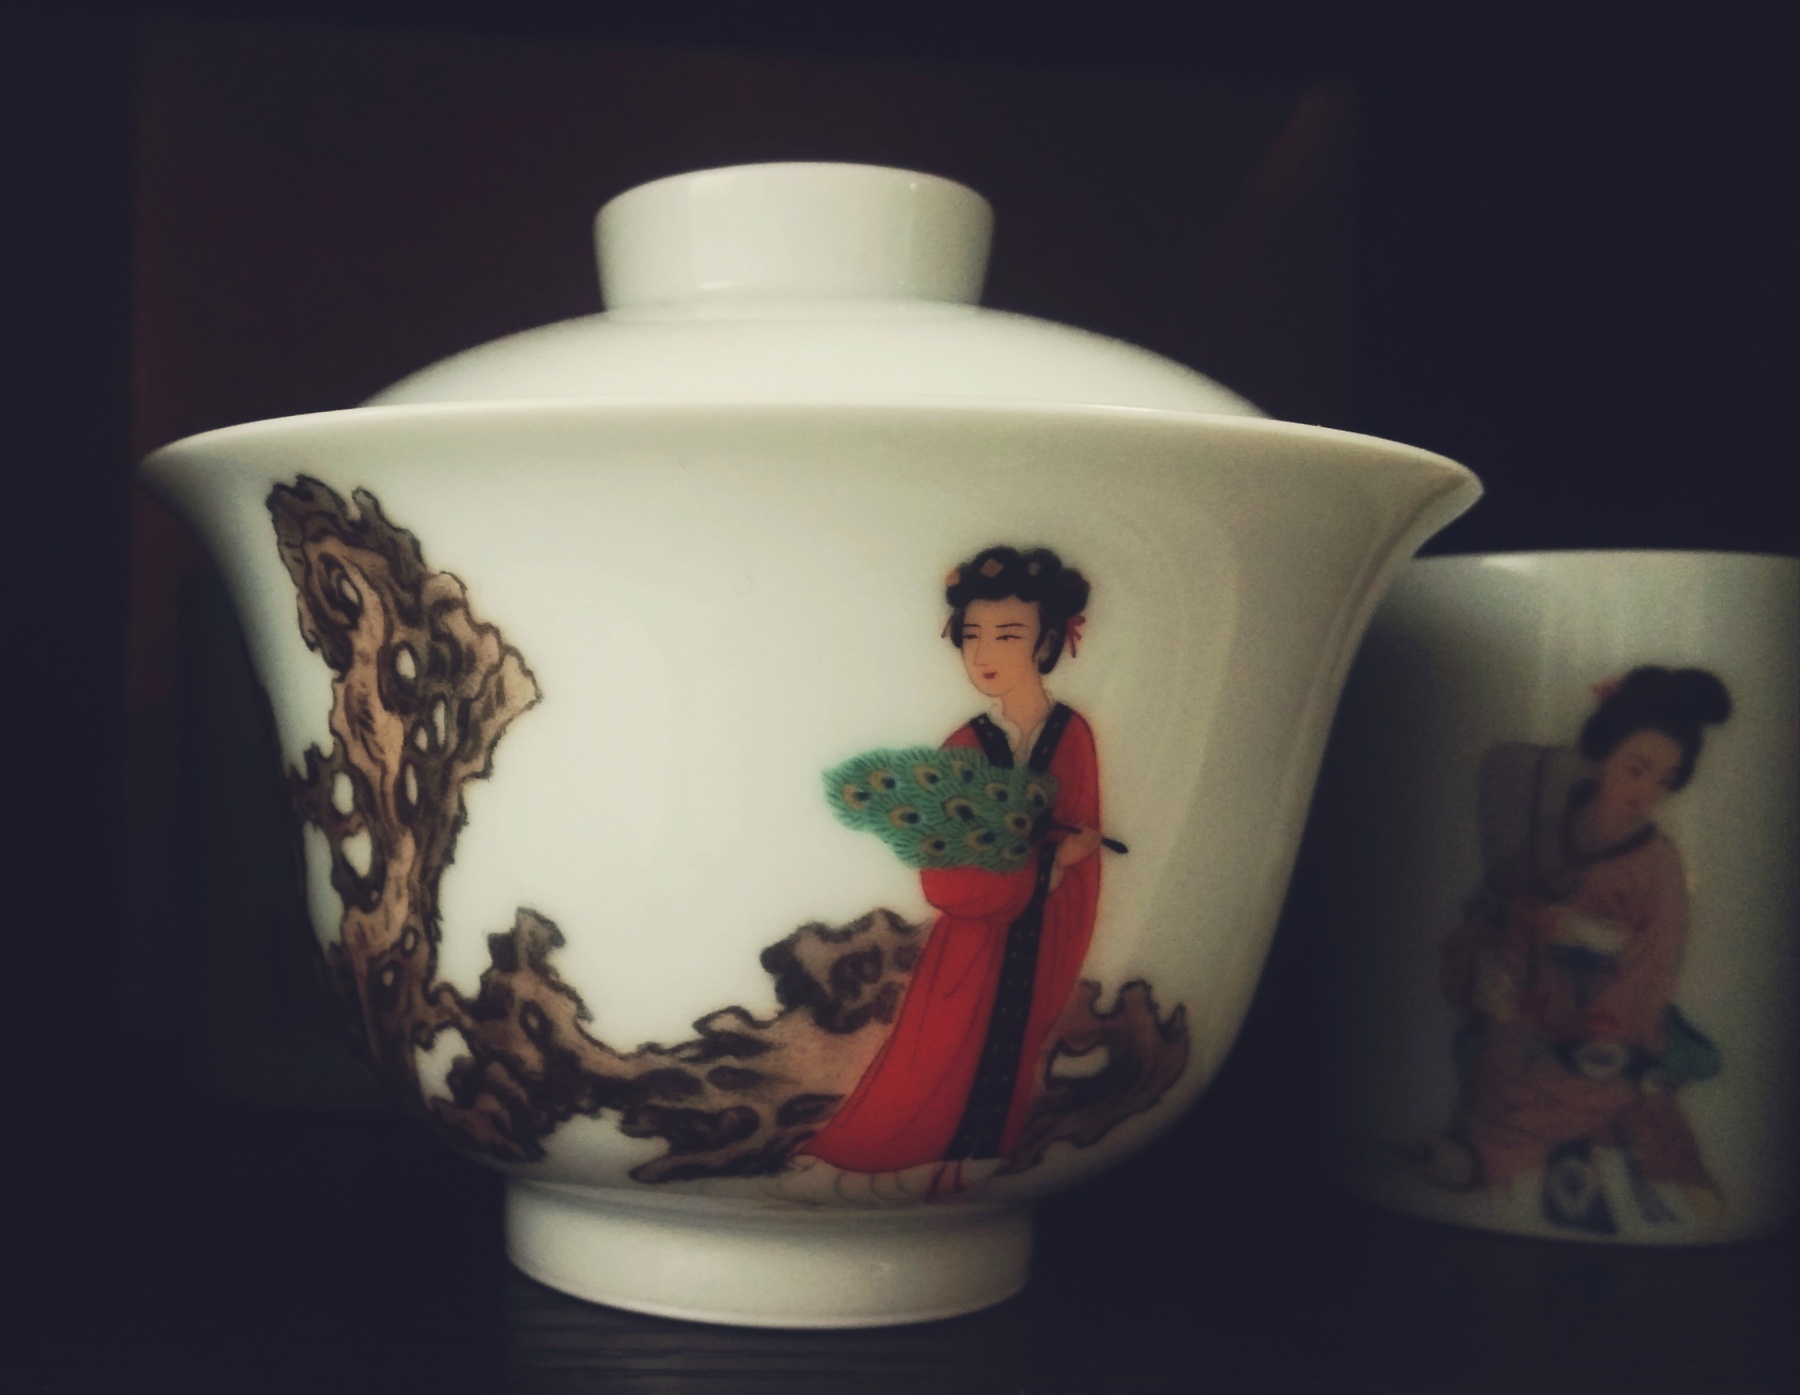 龚安安的景德镇日常手绘茶器之一